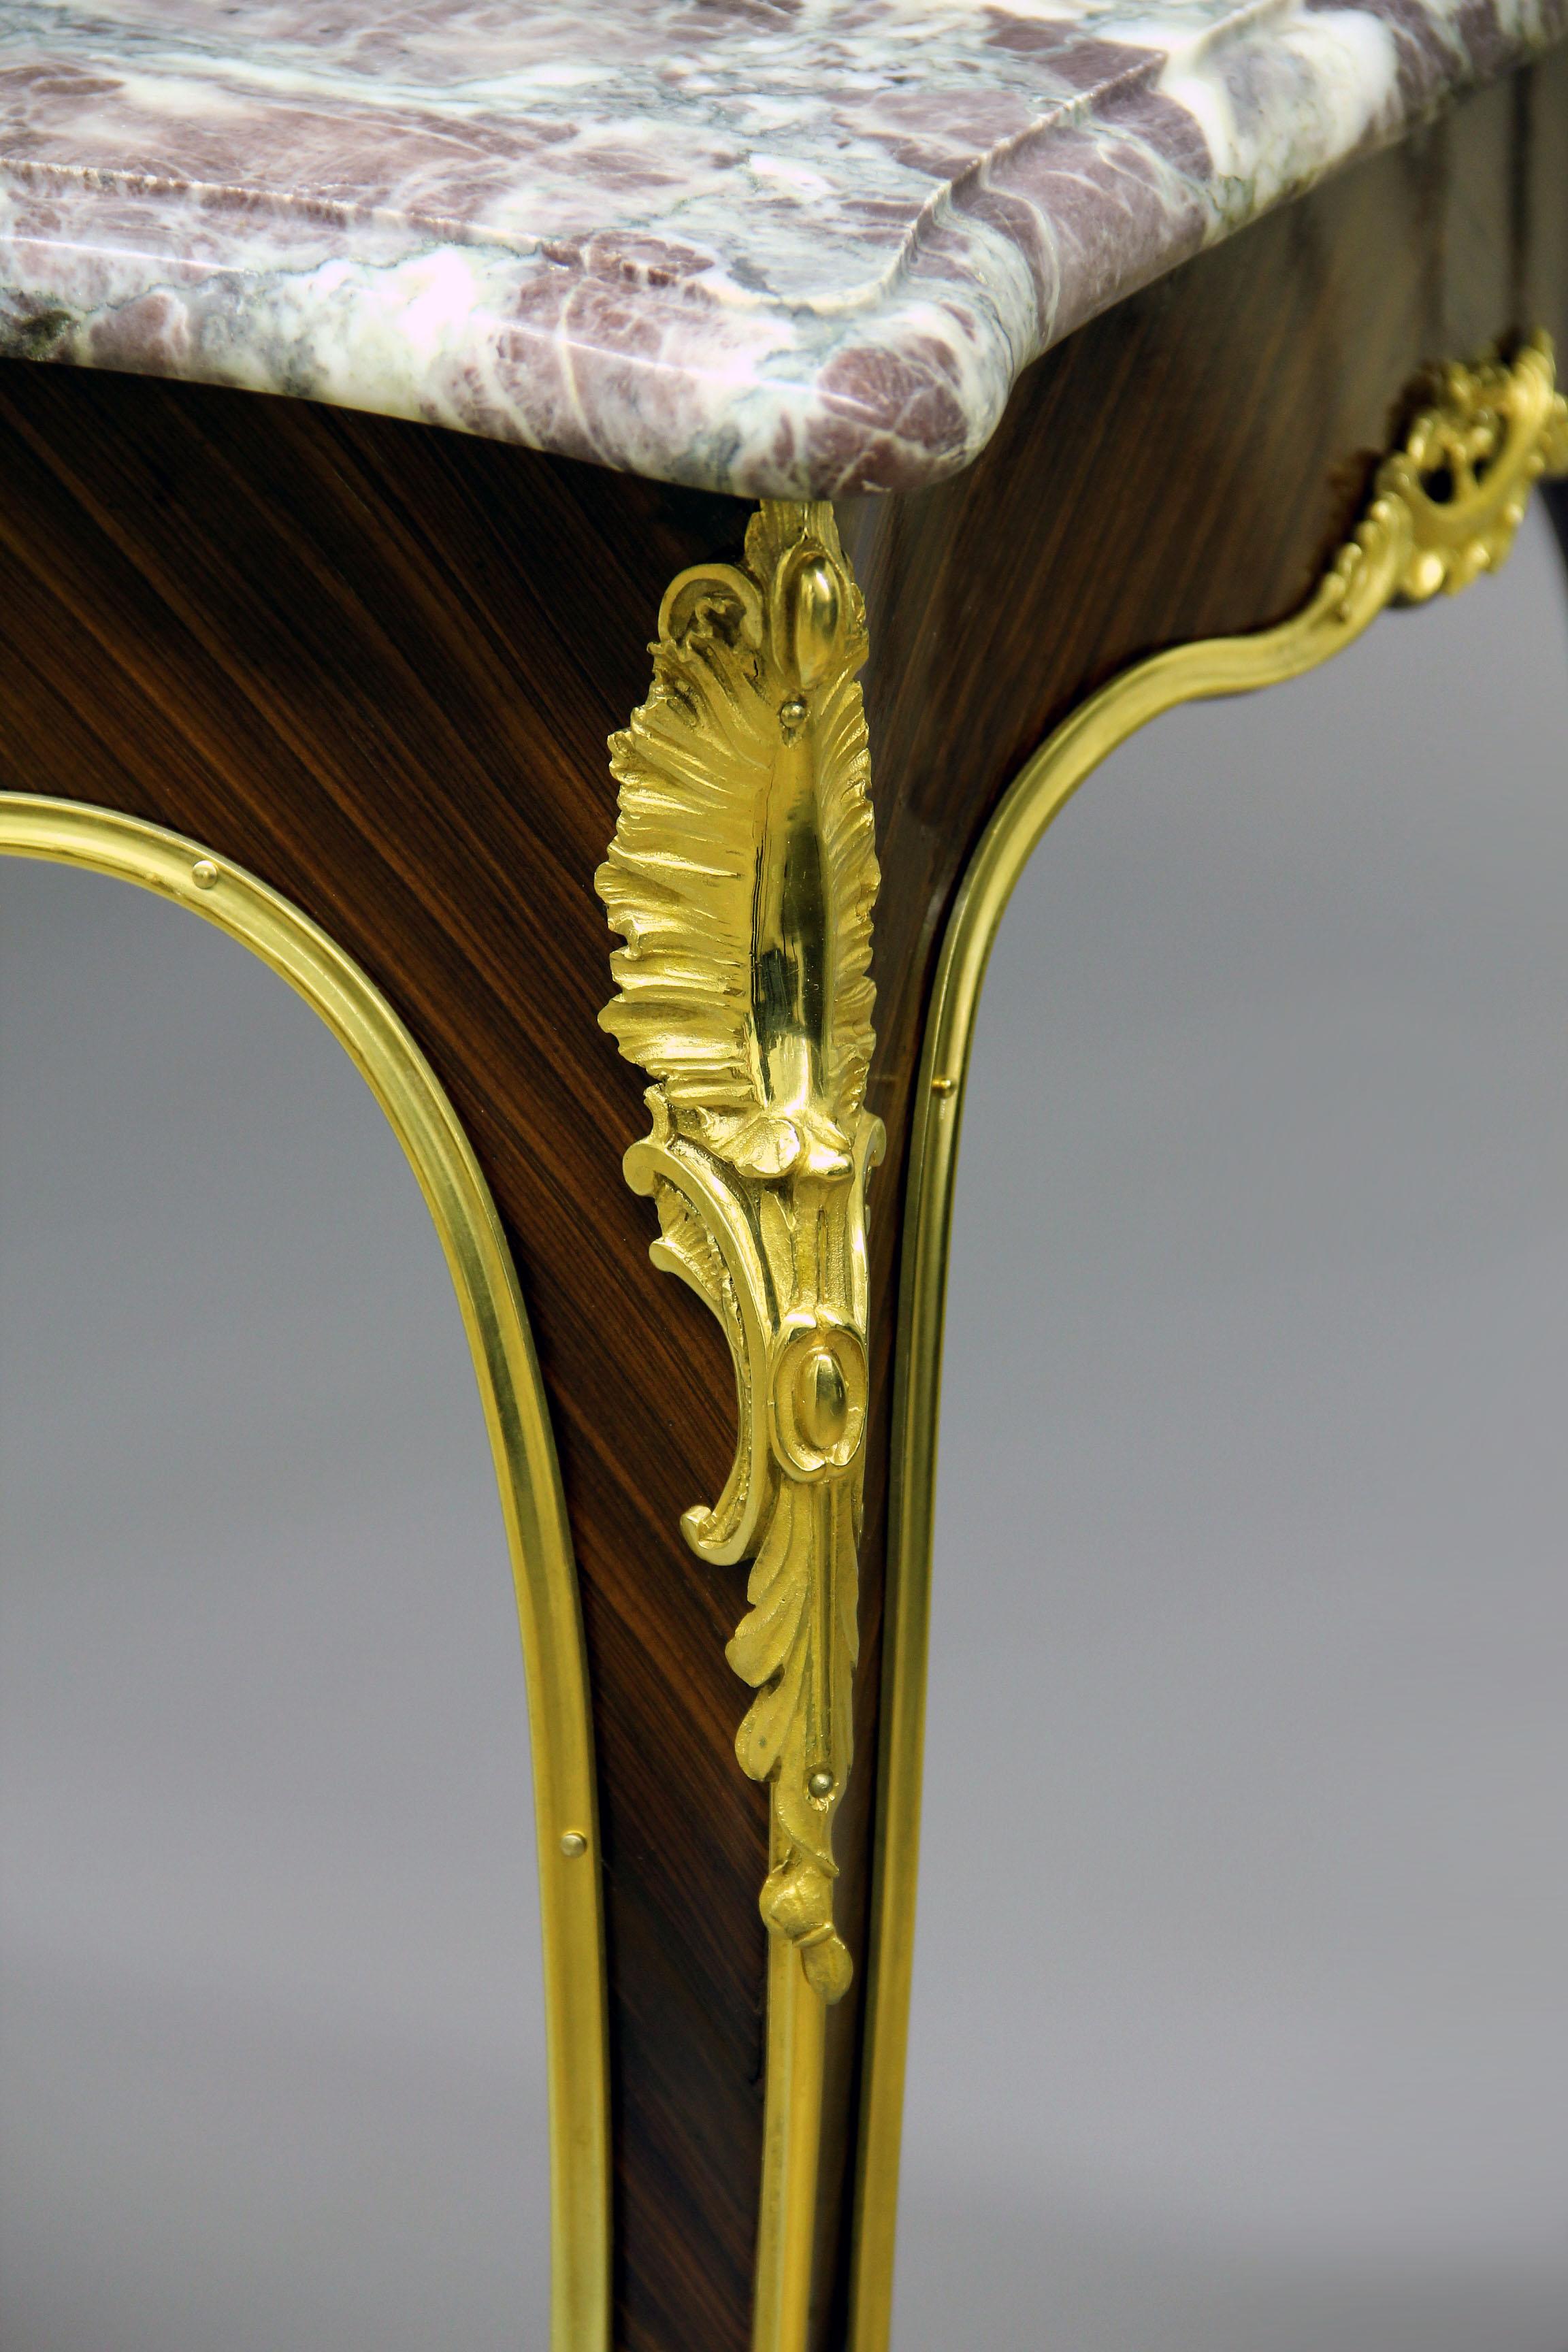 Belle table d'appoint de style Louis XV, fin du 19ème siècle, montée en bronze doré

Le plateau de forme carrée en marbre Brèche Violette repose sur des pieds effilés en bronze et des sabots d'acanthe à volutes.